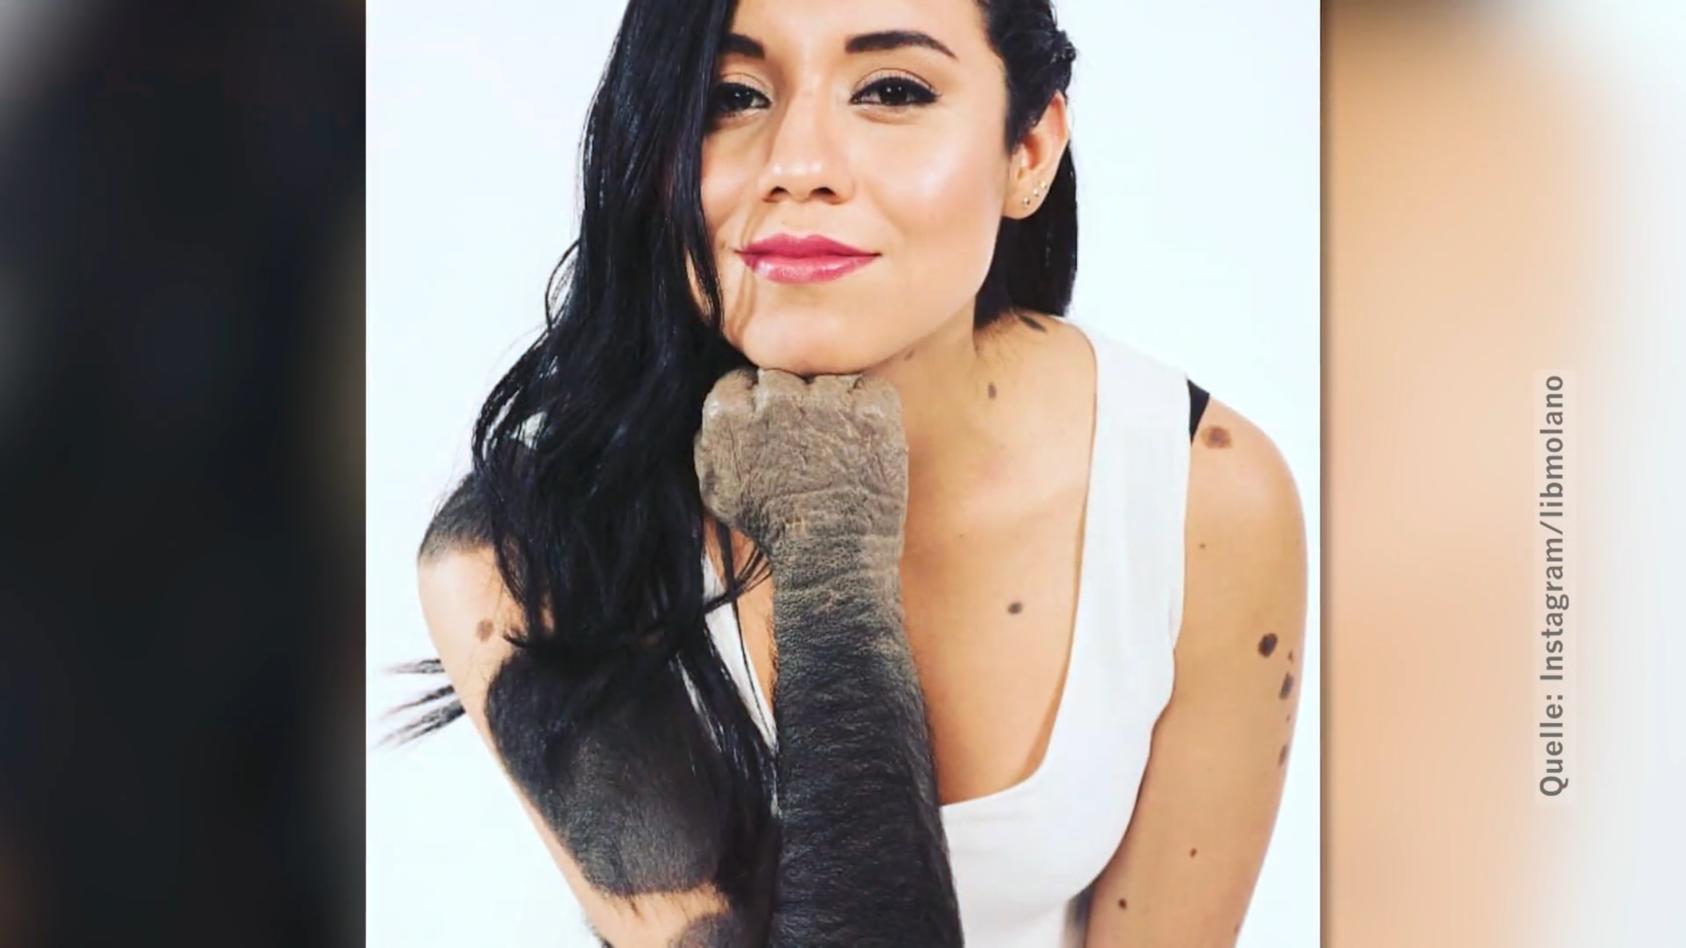 Libny Molano hat über 200 Muttermale Sie wird "Gorilla-Frau" genannt!